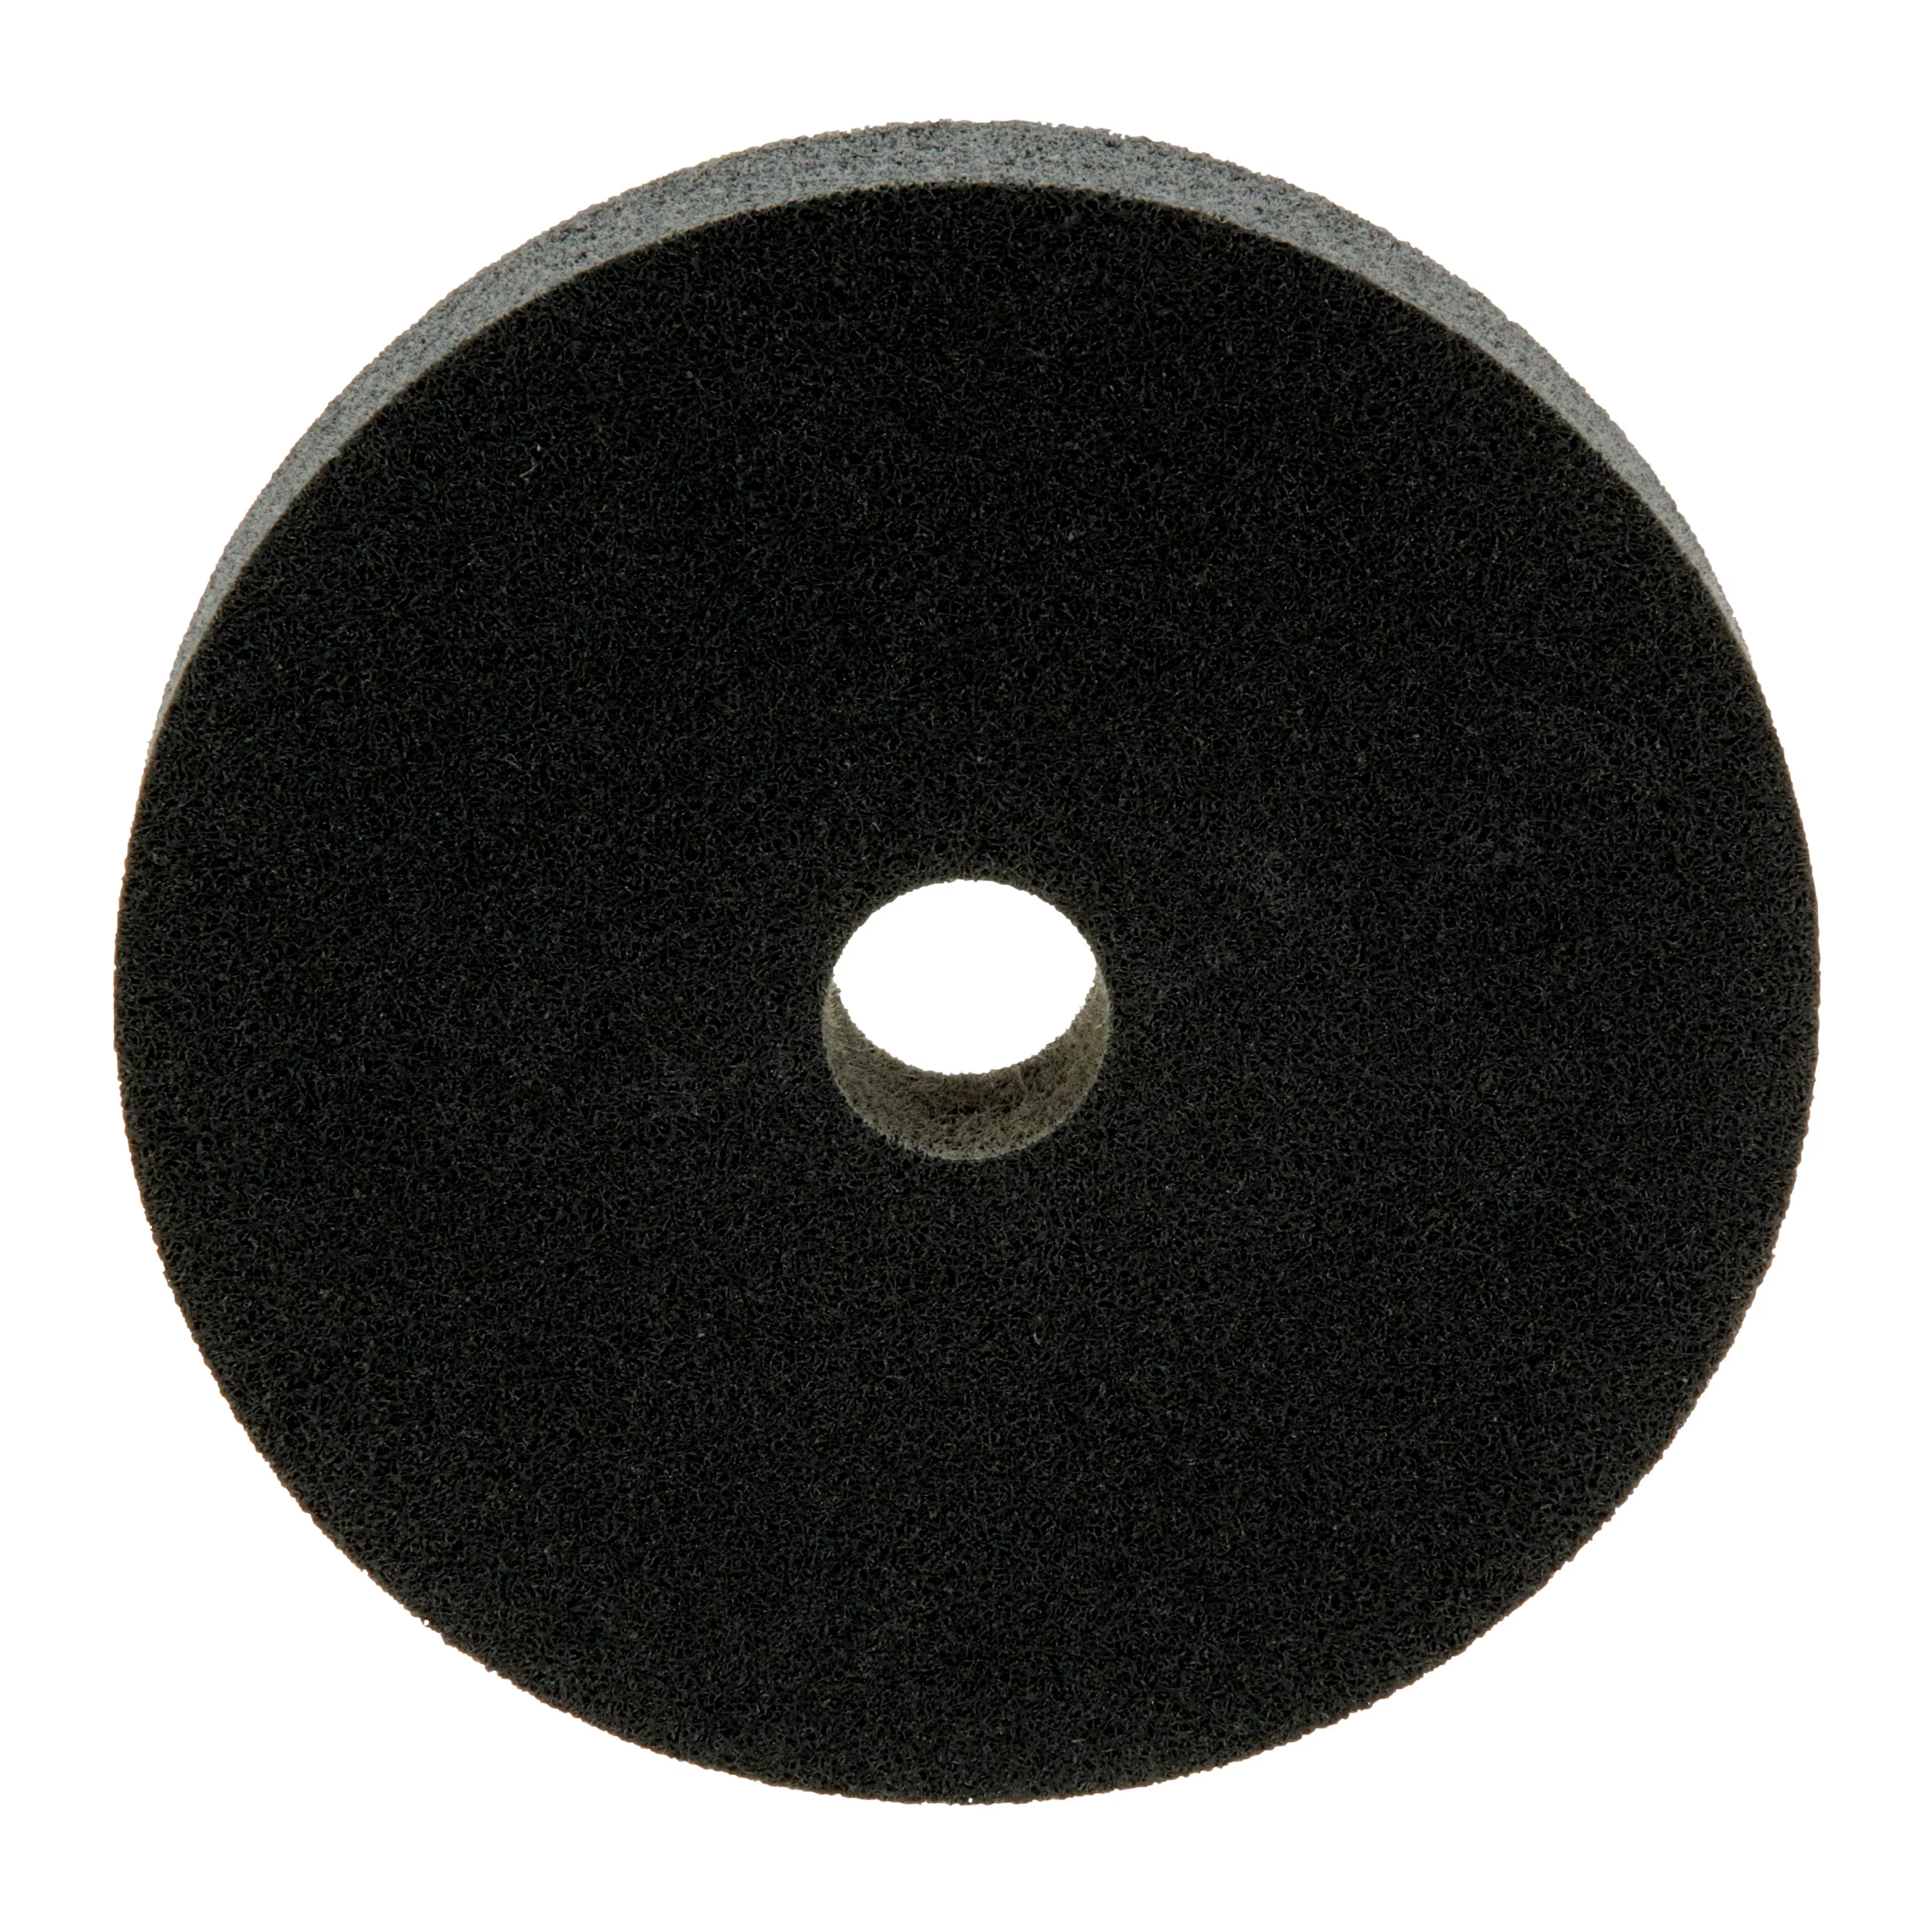 Standard Abrasives™ S/C Unitized Wheel 863278, 632 6 in x 1 in x 1 in, 3
ea/Case